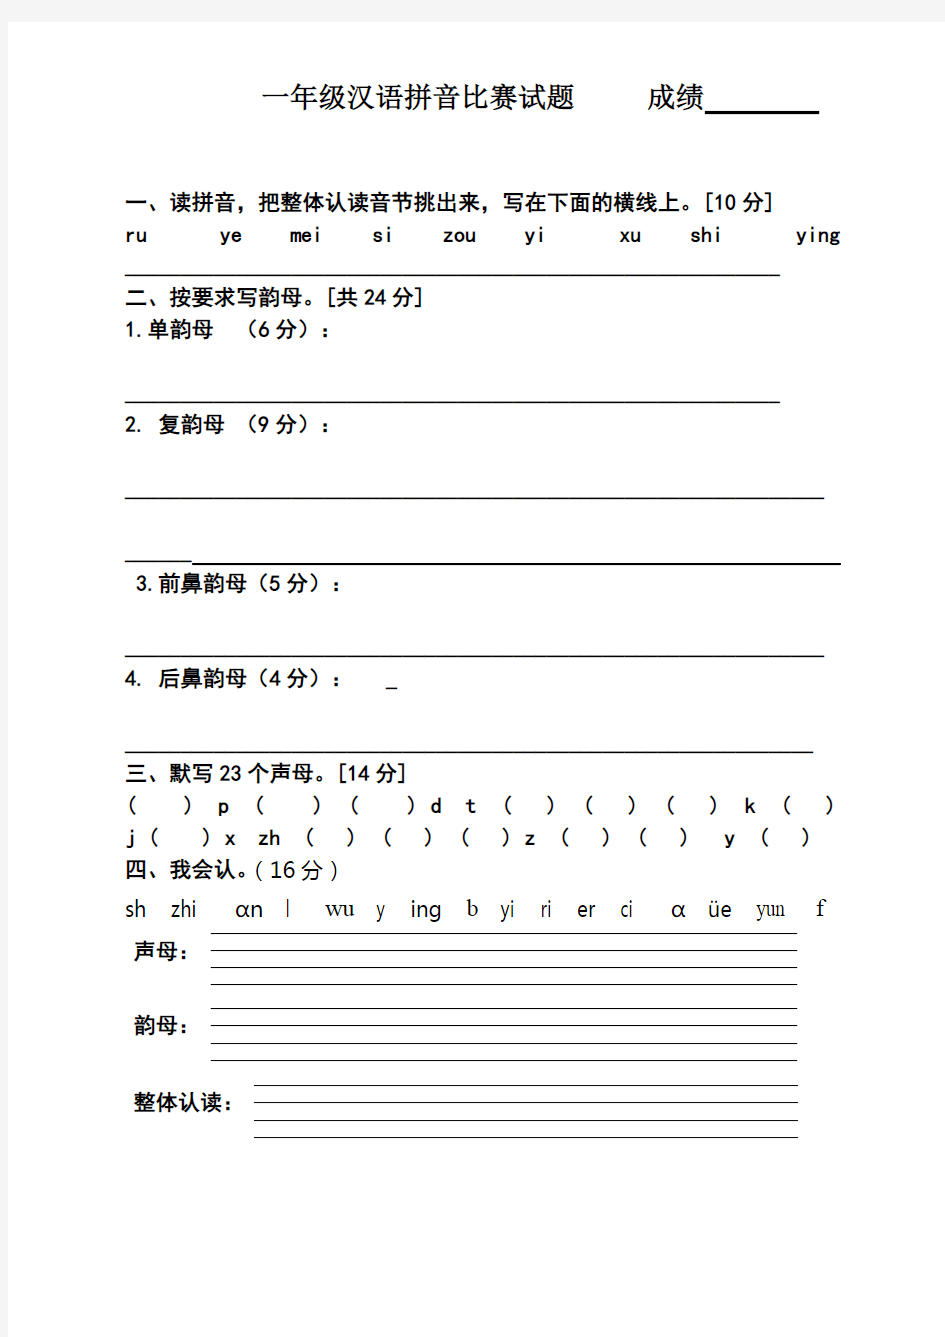 一年级汉语拼音知识竞赛试题(可打印修改)